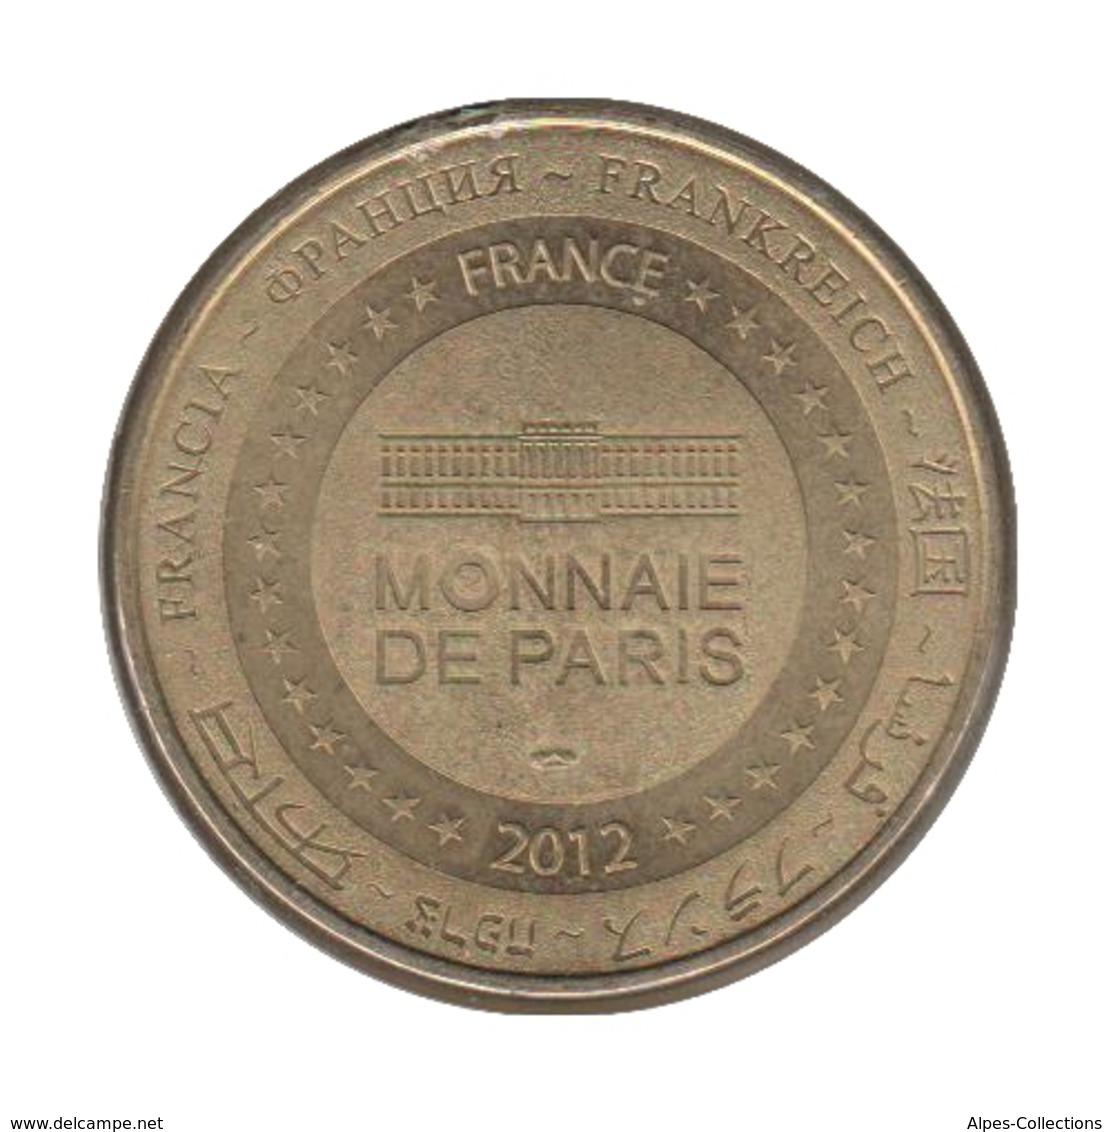 63045 - MEDAILLE TOURISTIQUE MONNAIE DE PARIS 63 - Vulcania - 2012 - 2012